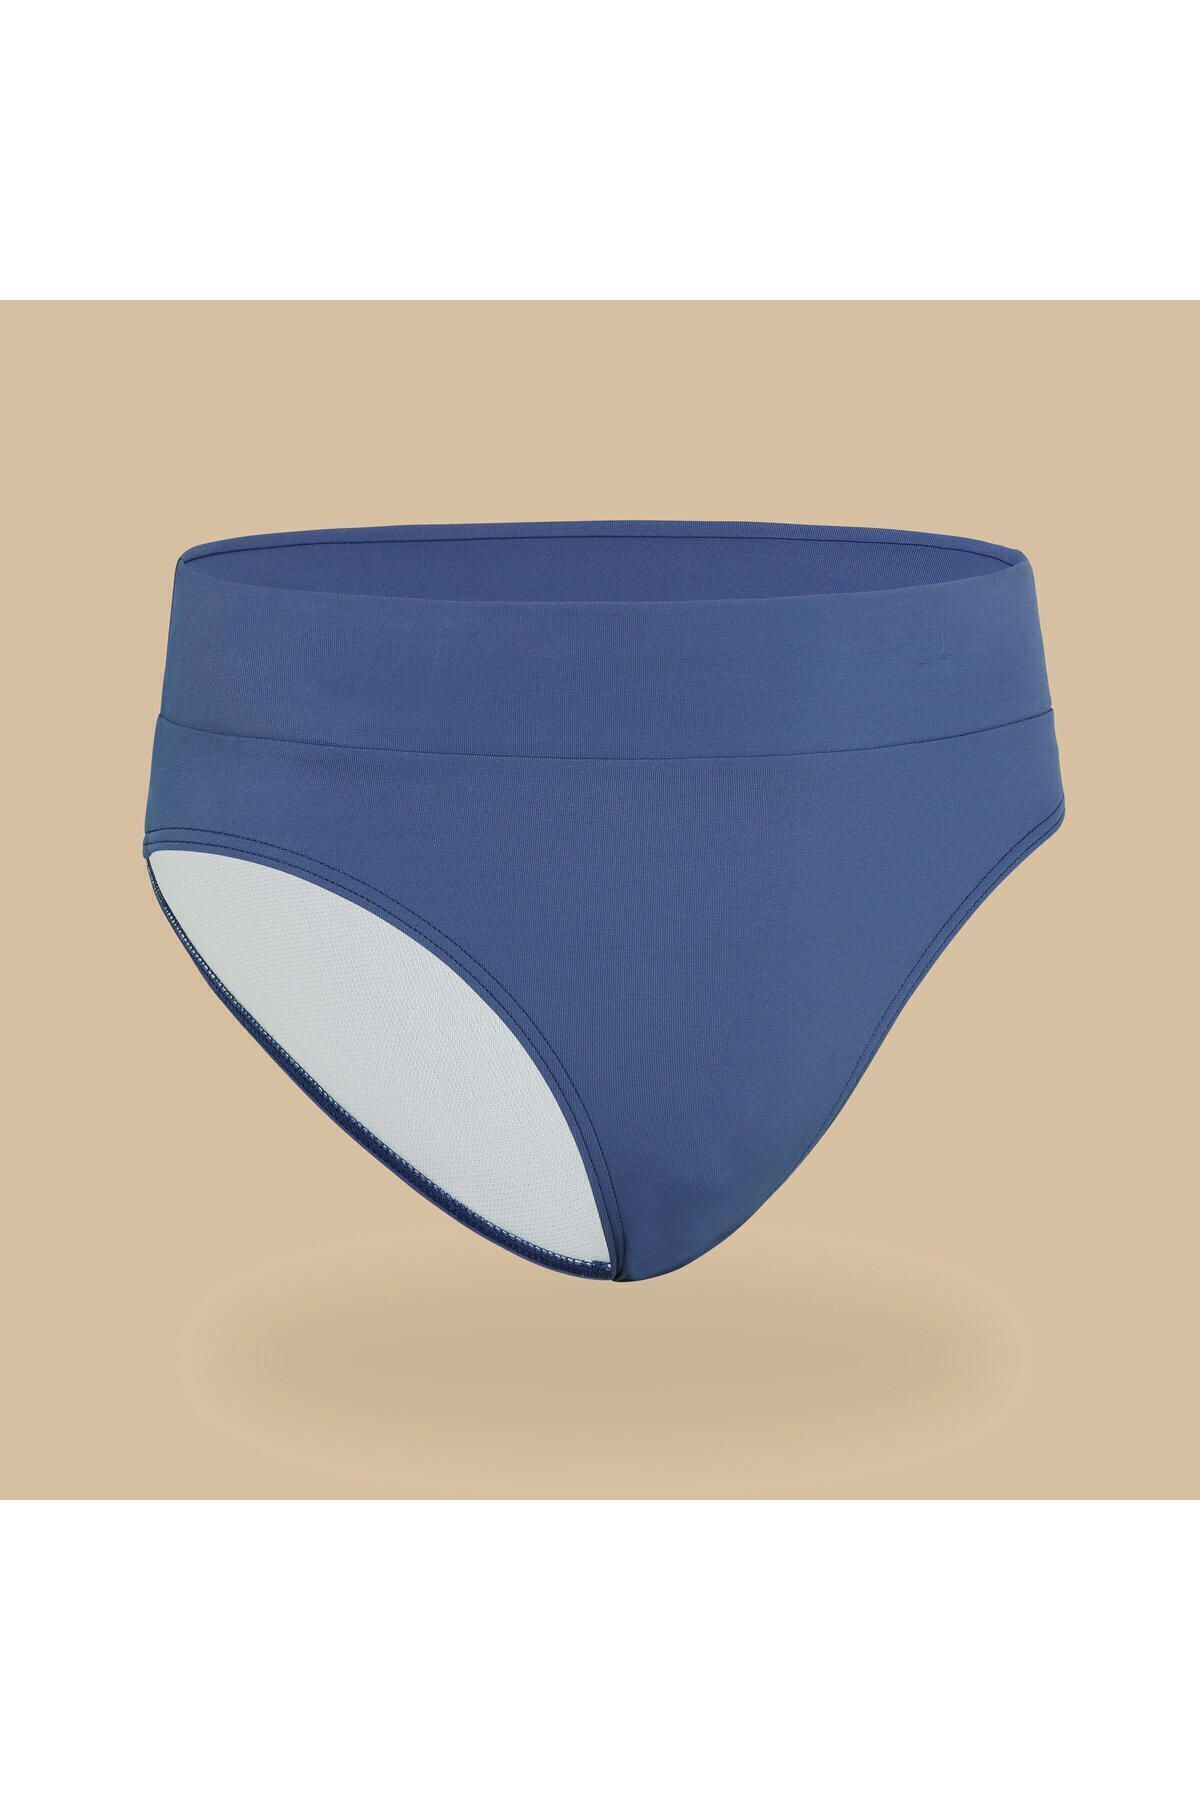 Decathlon Çocuk Bikini Altı - Mavi - Bao 500 Beden: 160-166cm 14-15 YAŞ